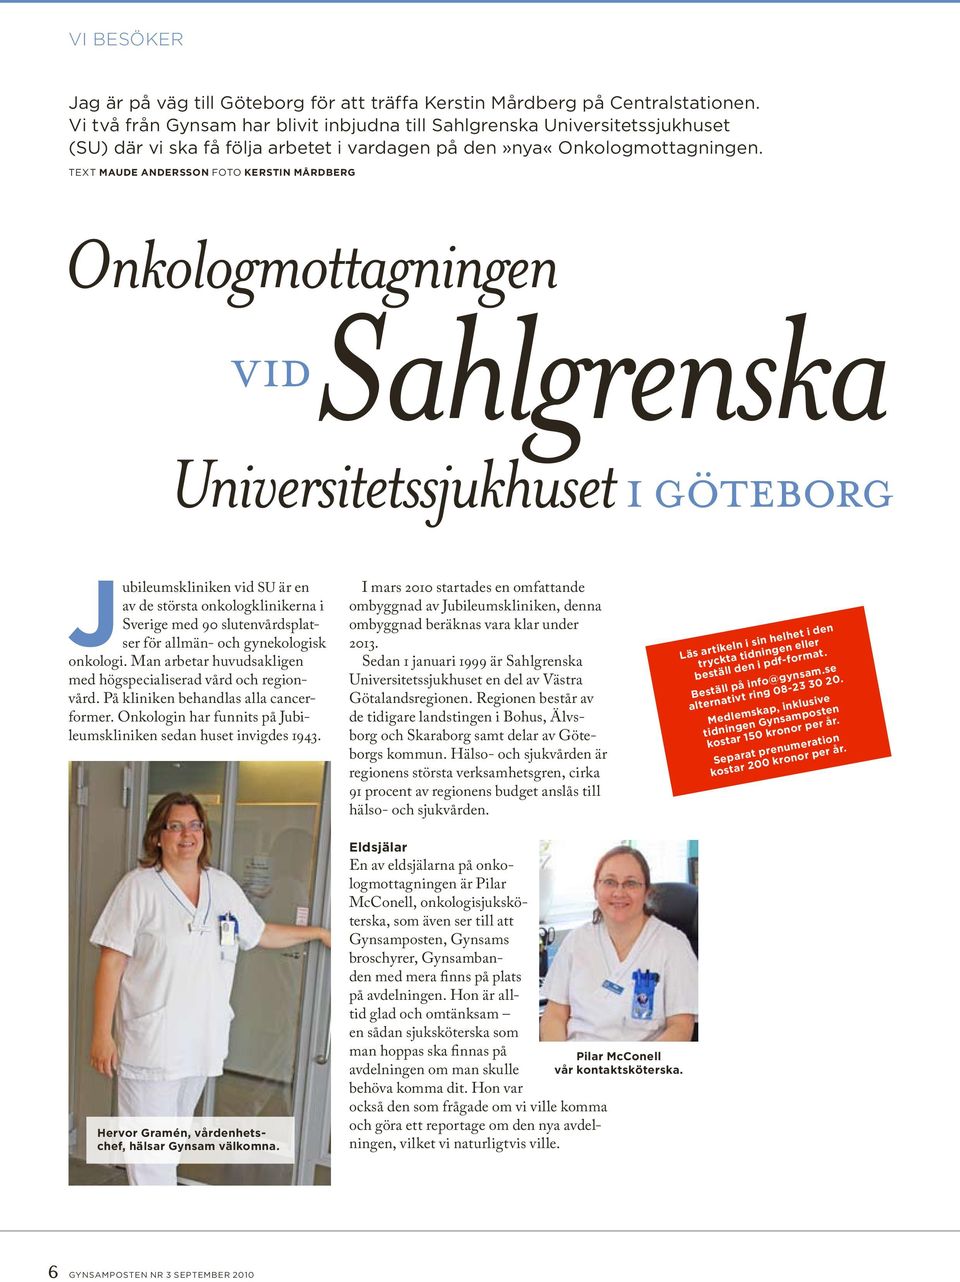 Text Maude Andersson Foto Kerstin Mårdberg Onkologmottagningen Sahlgrenska vid Universitetssjukhuset i göteborg ubileumskliniken vid SU är en av de största onkologklinikerna i Sverige med 90